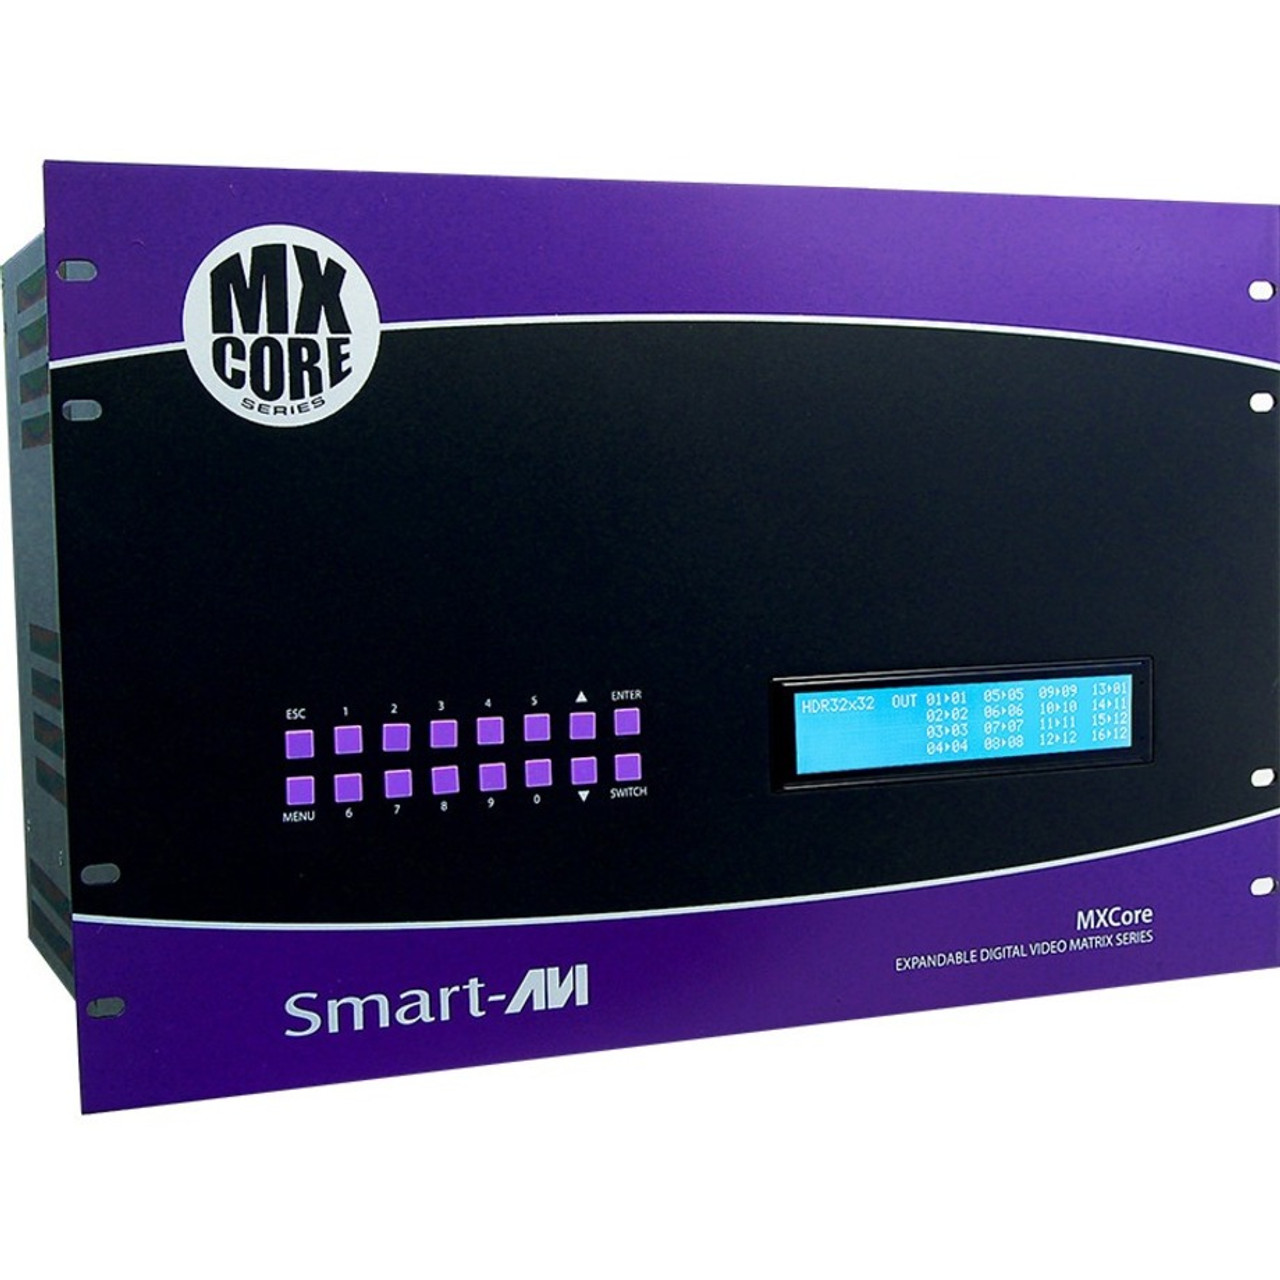 SmartAVI MXCORE-UD Expandable DVI-D 8X16 Matrix Switcher - MXC-UD08X16S